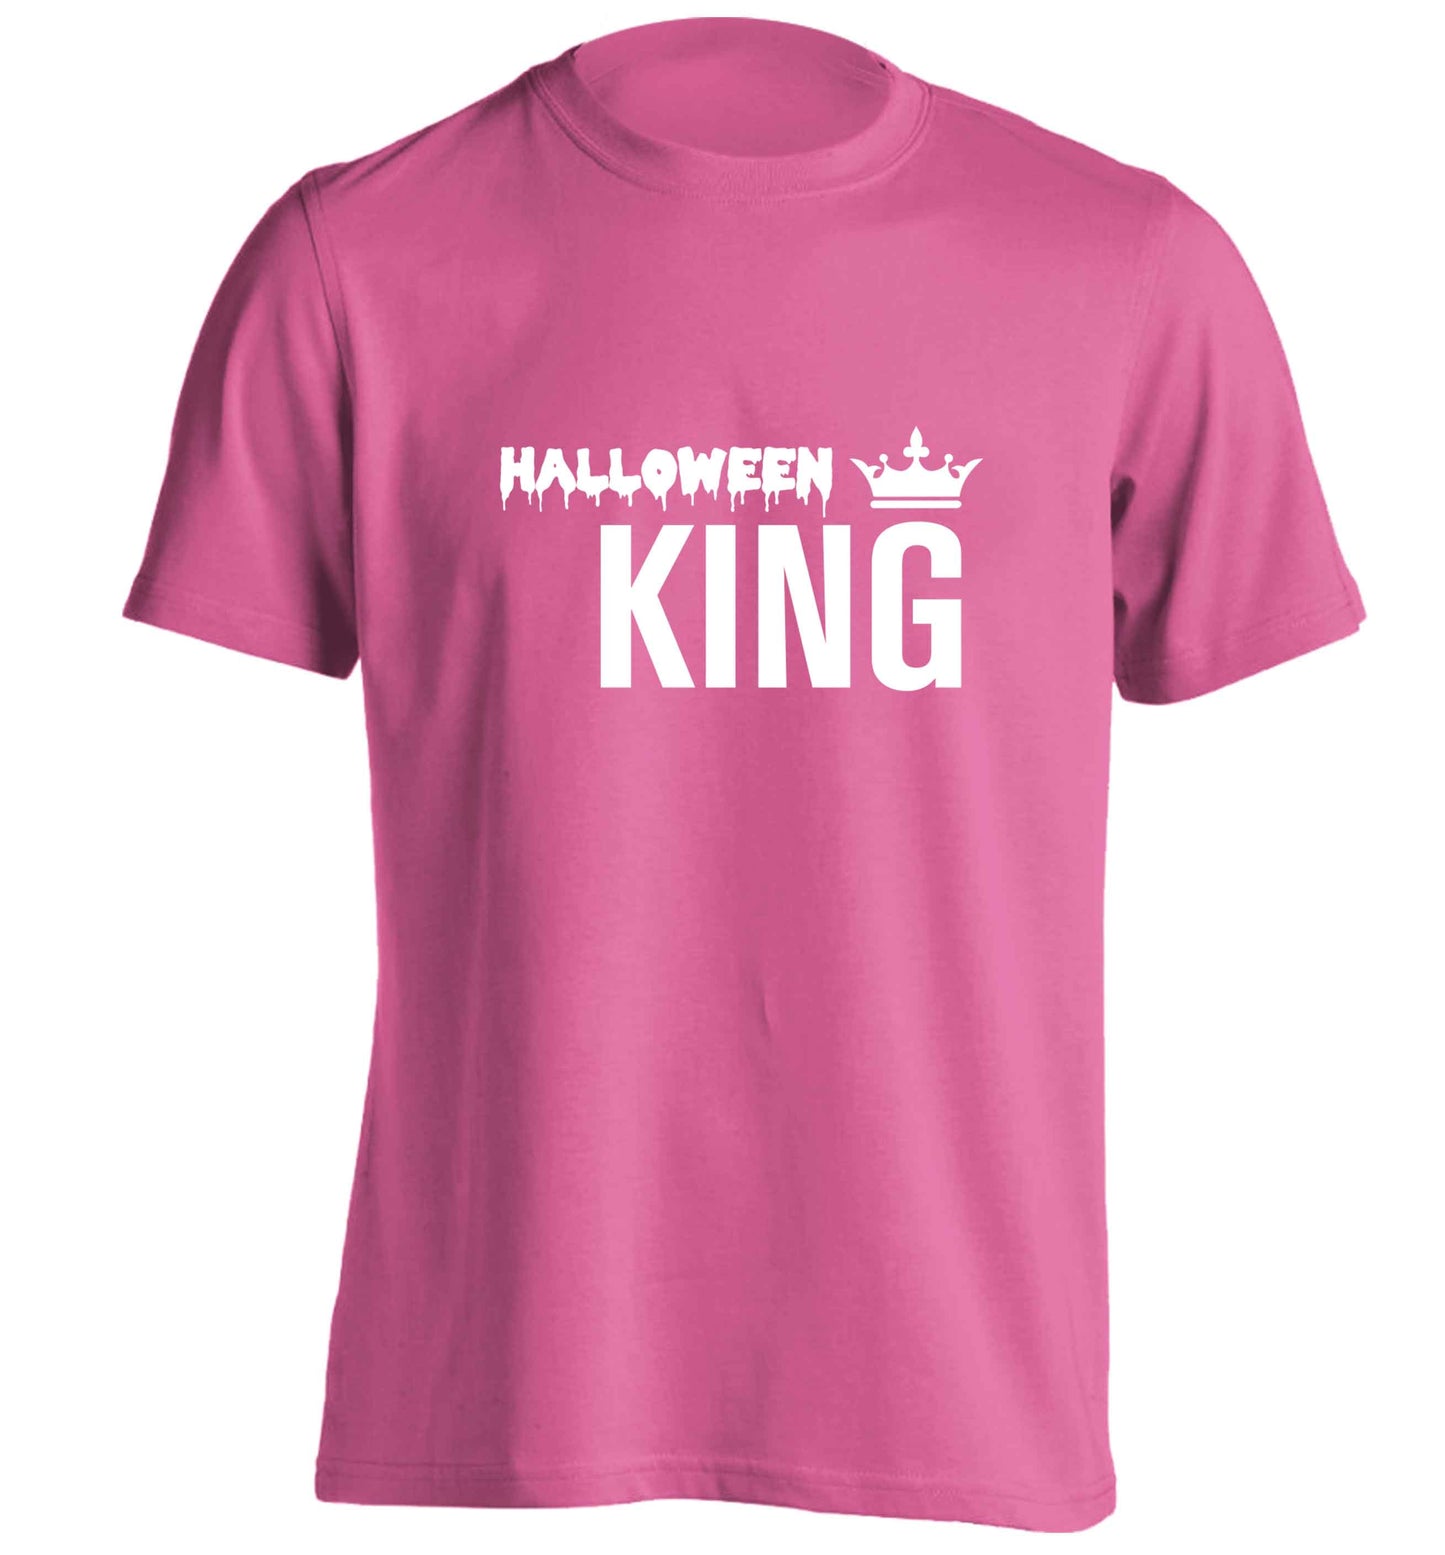 Halloween king adults unisex pink Tshirt 2XL